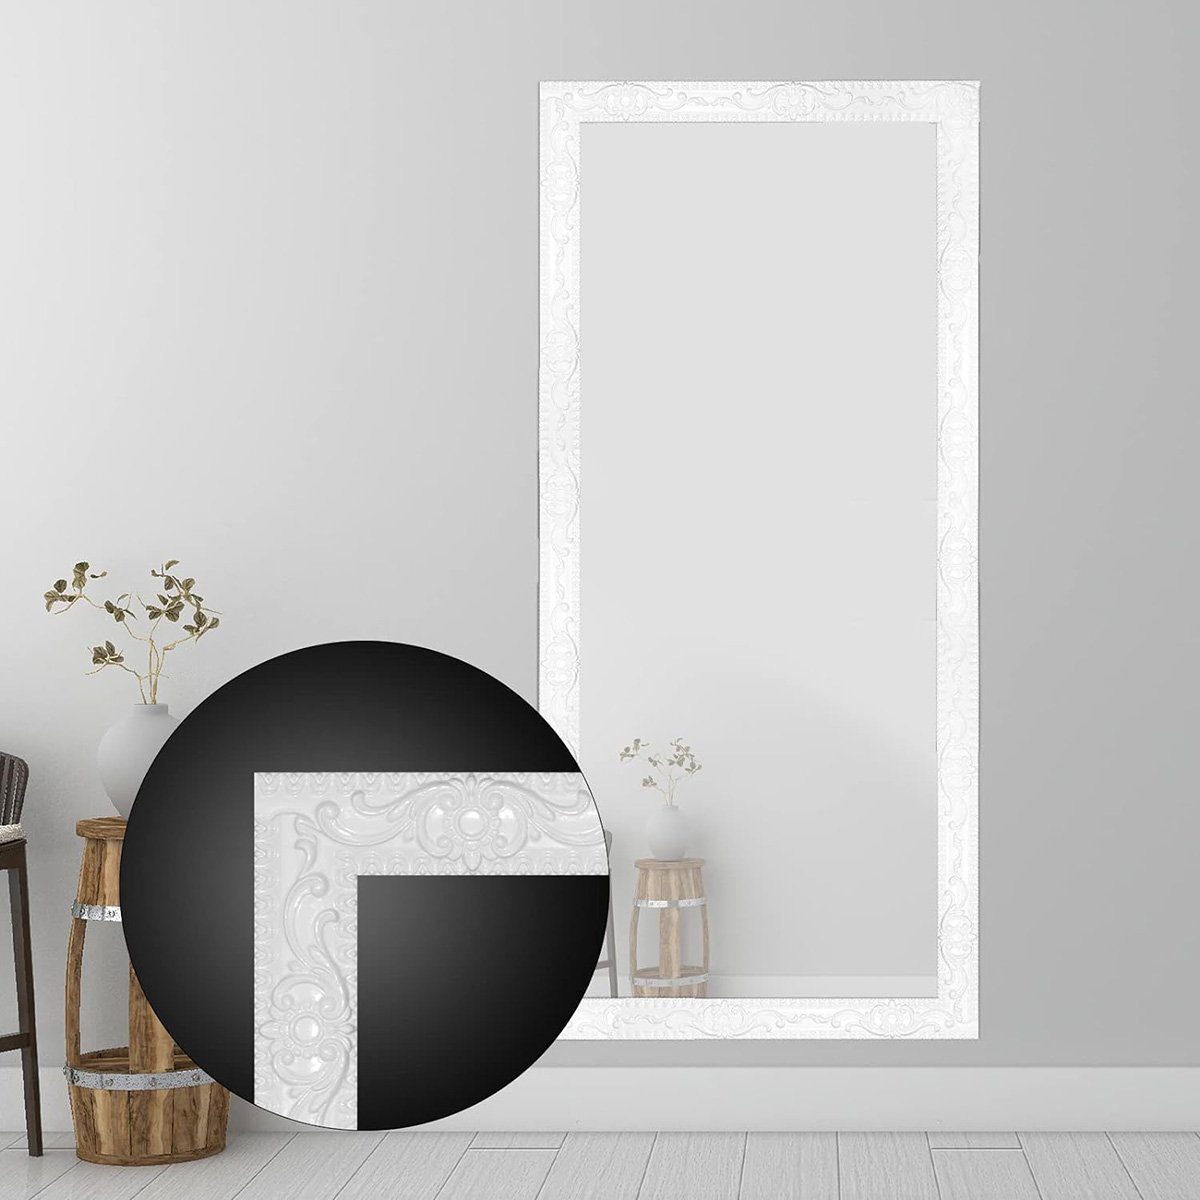 – in: 1,4 Decken Selbstklebende x ft. & Wanddekorationen, für Spiegelrahmen. götäzer 16,4 flexible Silber aufkleben Einfassung Abziehen, Sockelleiste